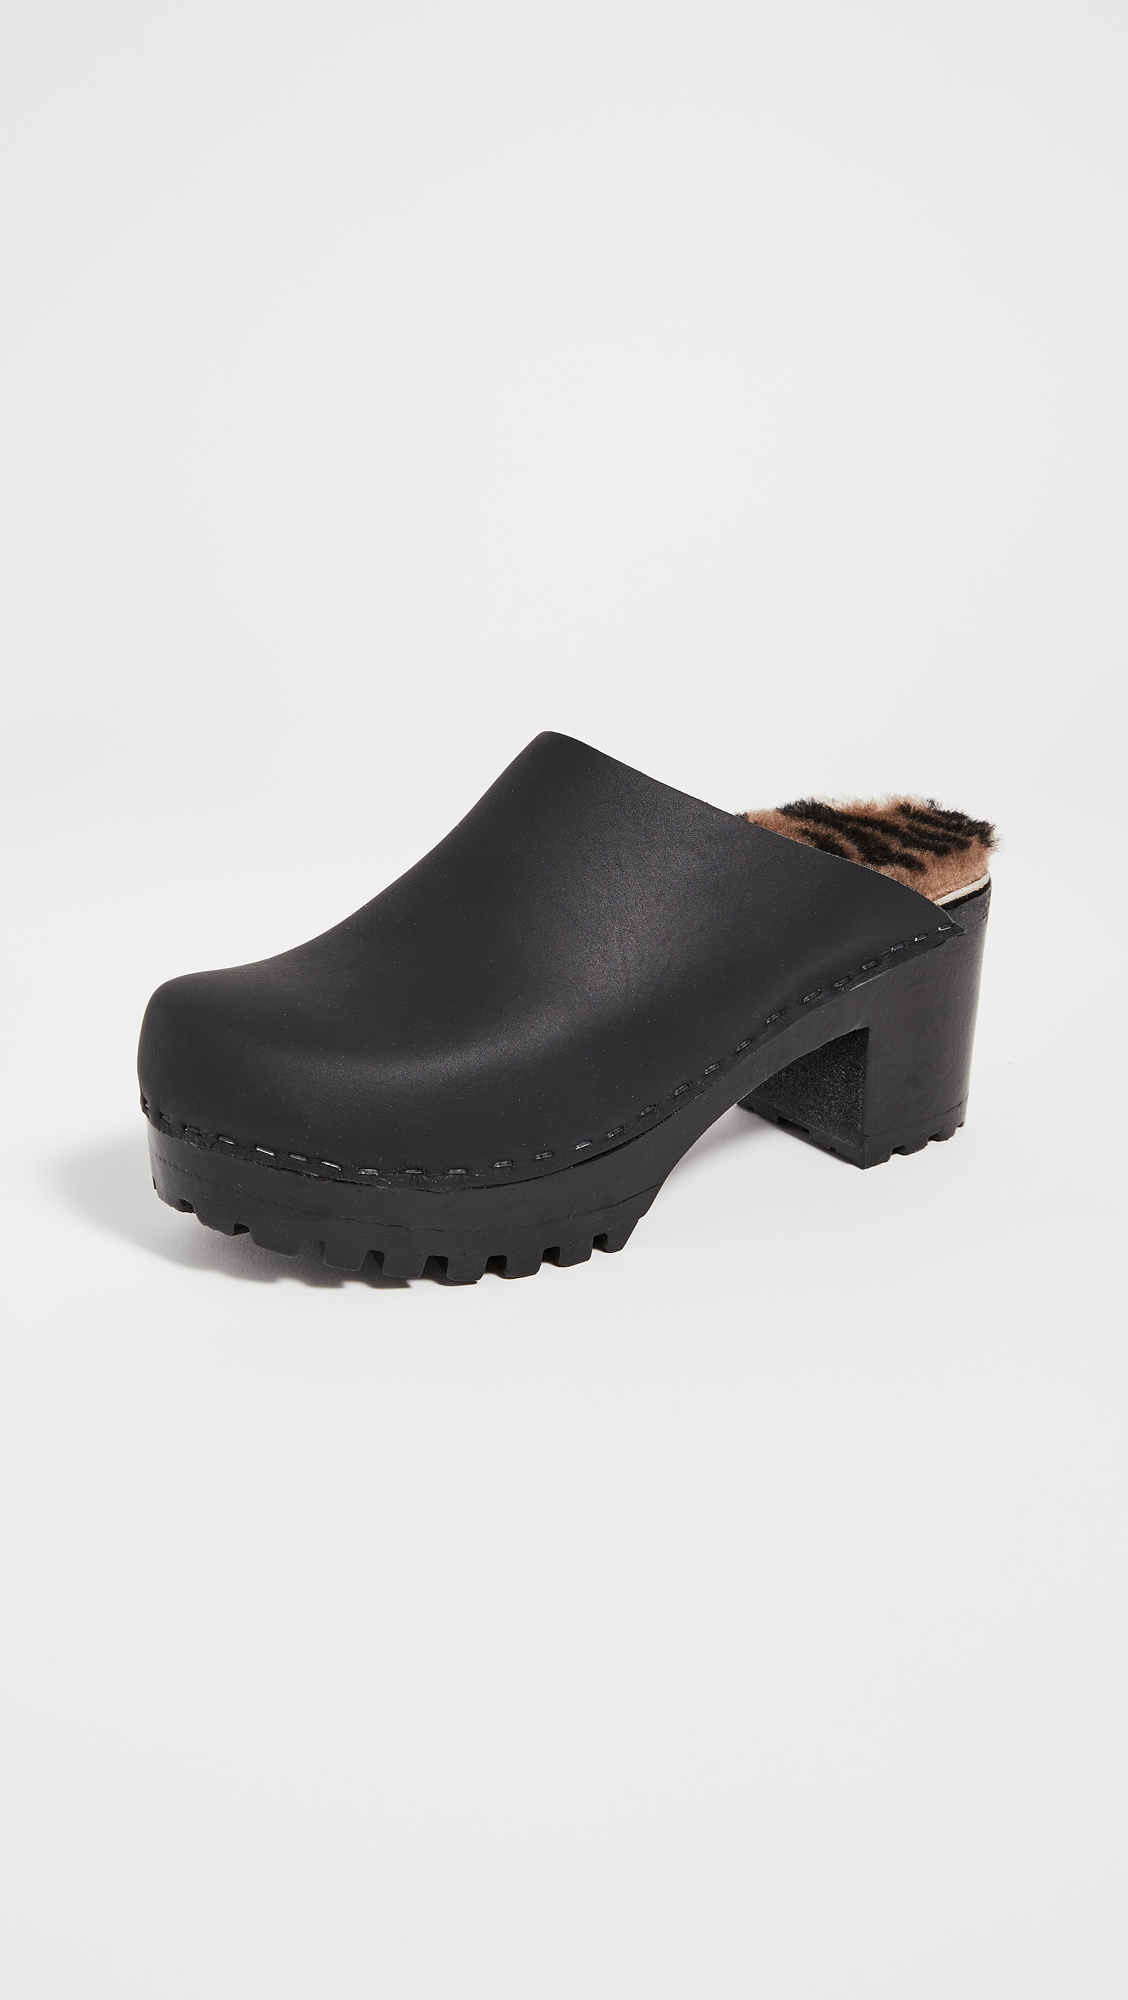 clogs platform shoes